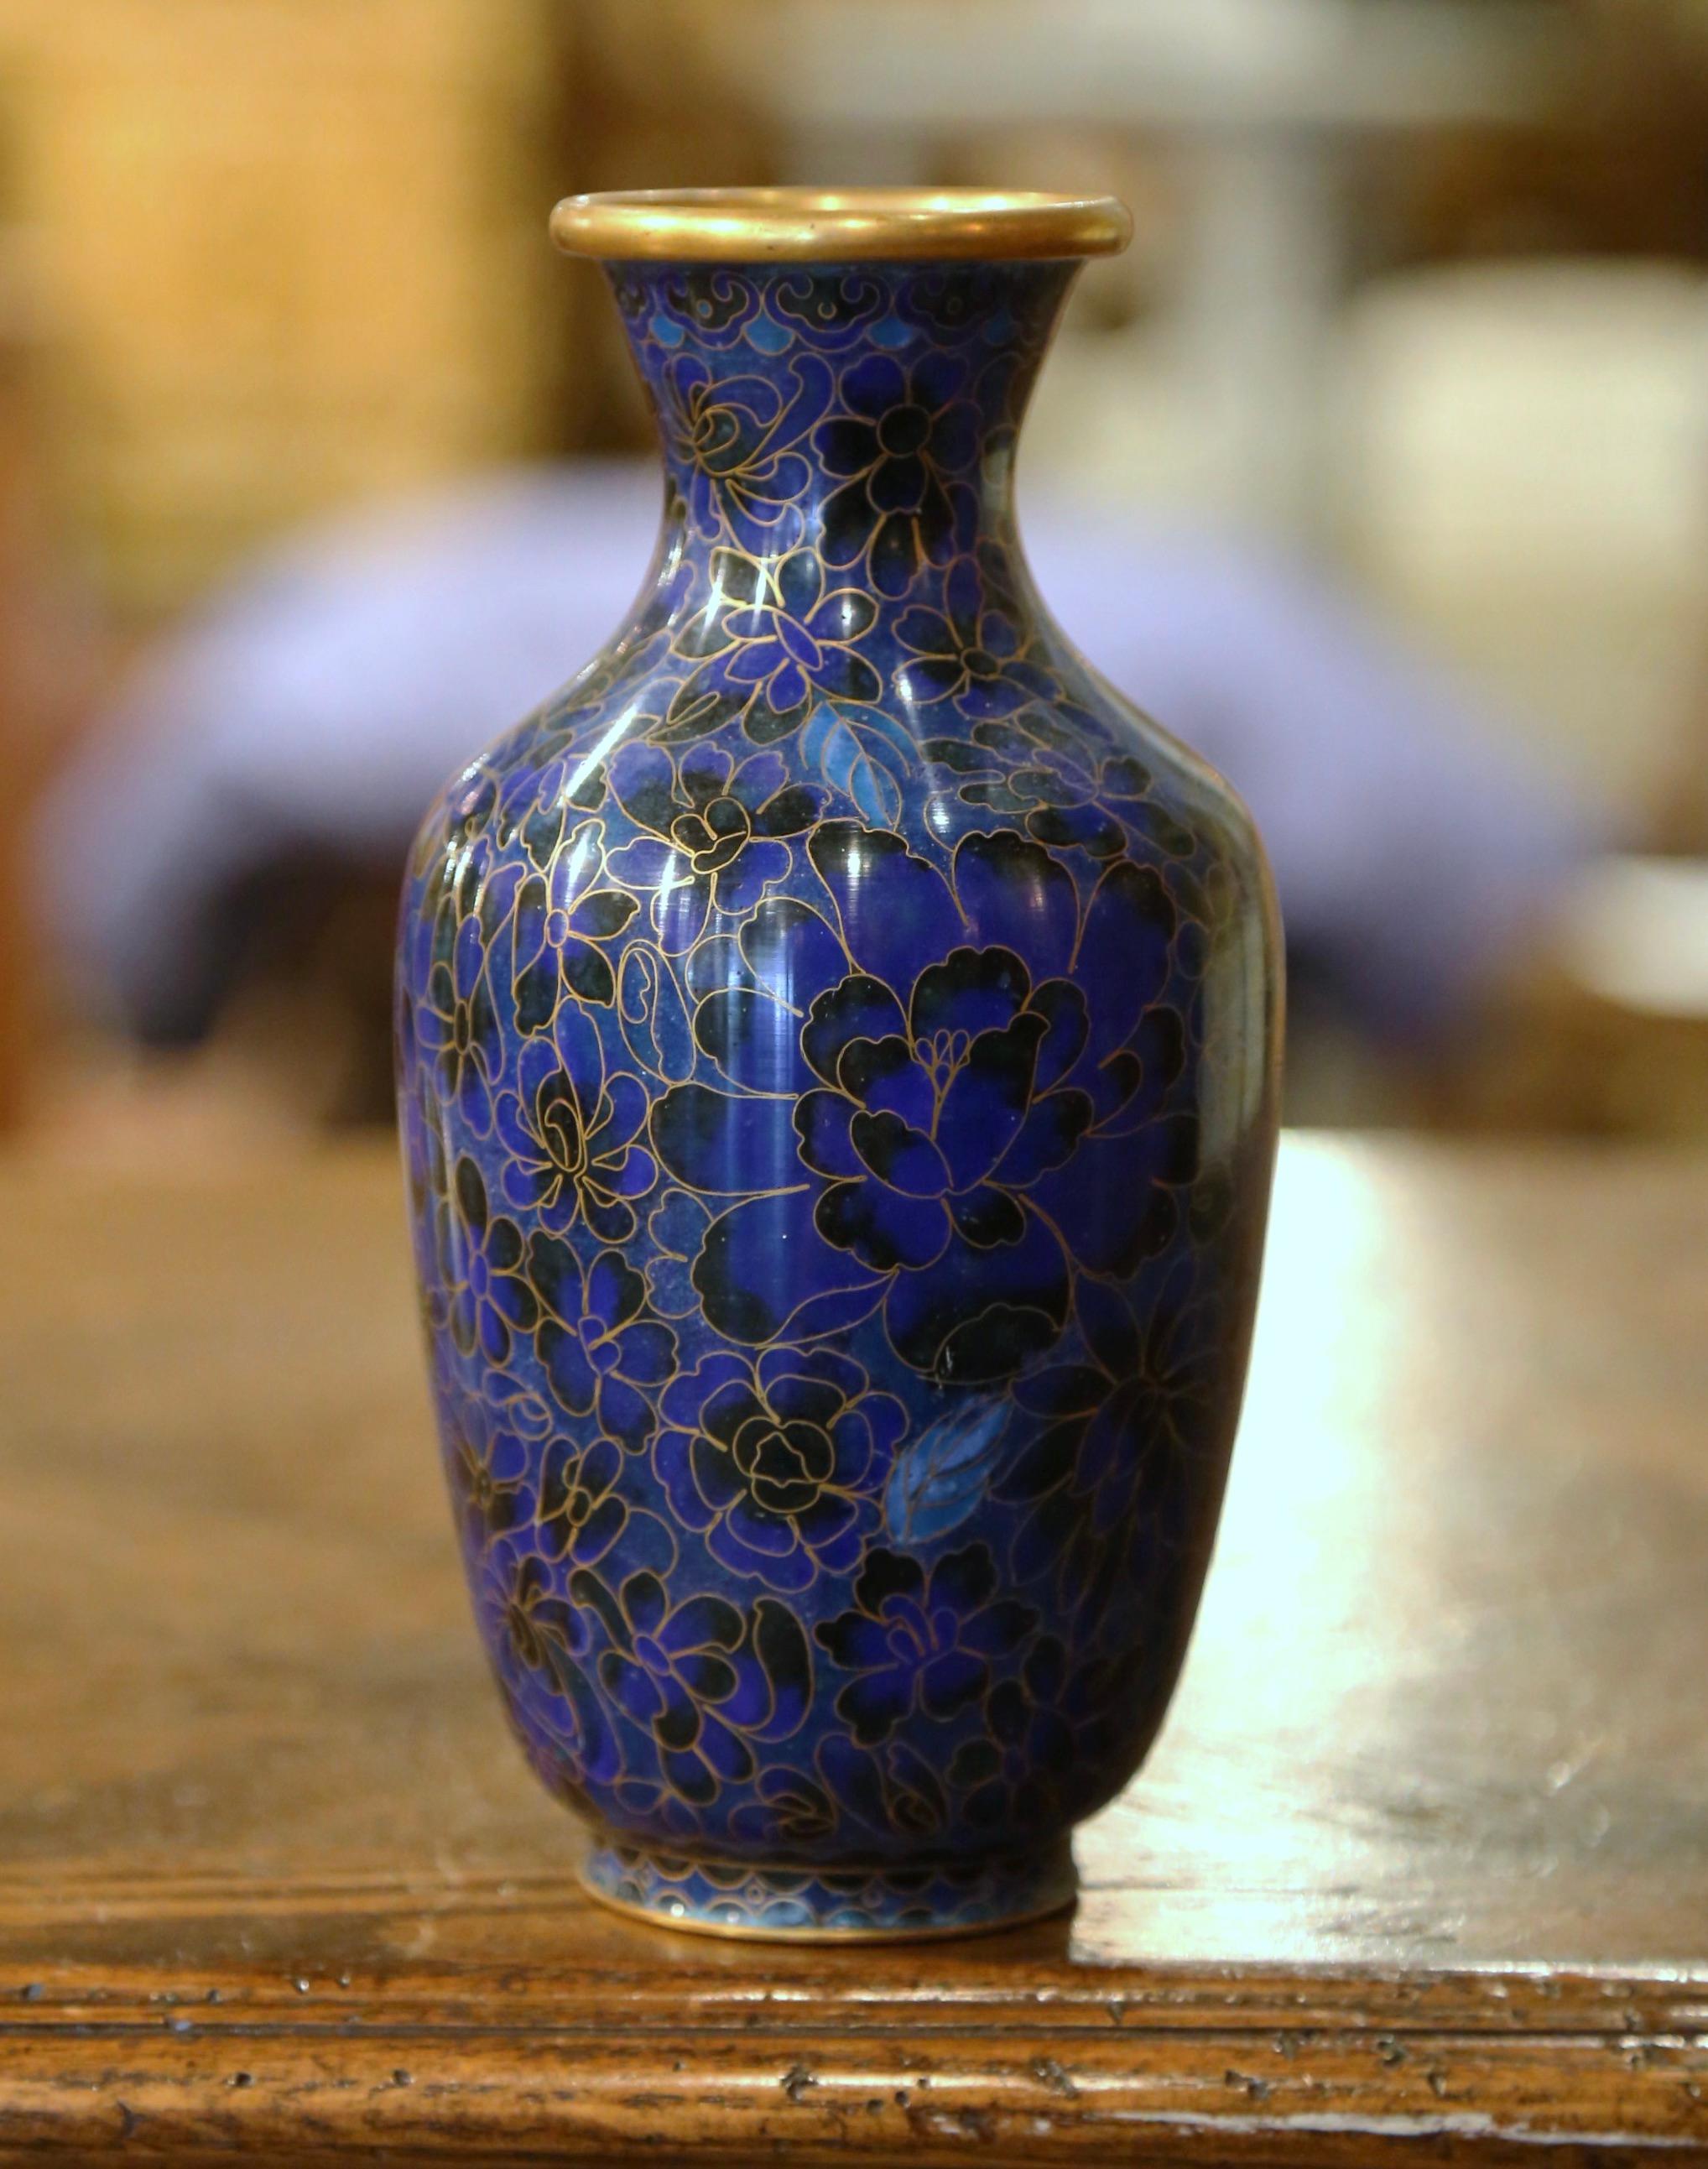 Décorez une table ou un buffet avec ce vase balustre coloré. Créé en Chine vers 1980, ce vase présente des motifs floraux dans la technique du cloisonné (travail décoratif dans lequel l'émail, le verre ou les pierres précieuses sont séparés par des